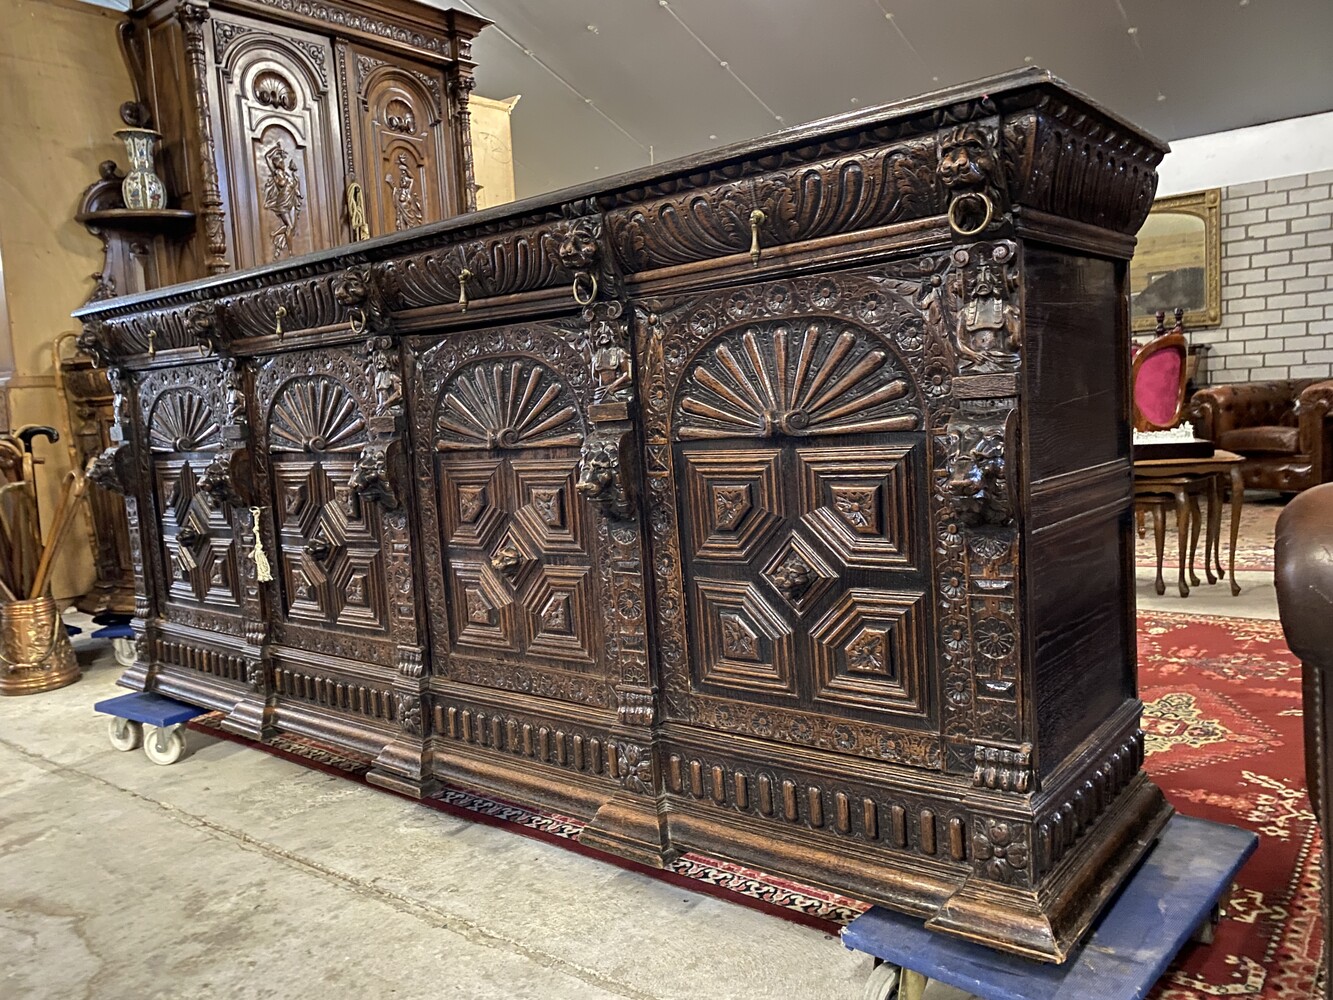 Very nice carved dresser